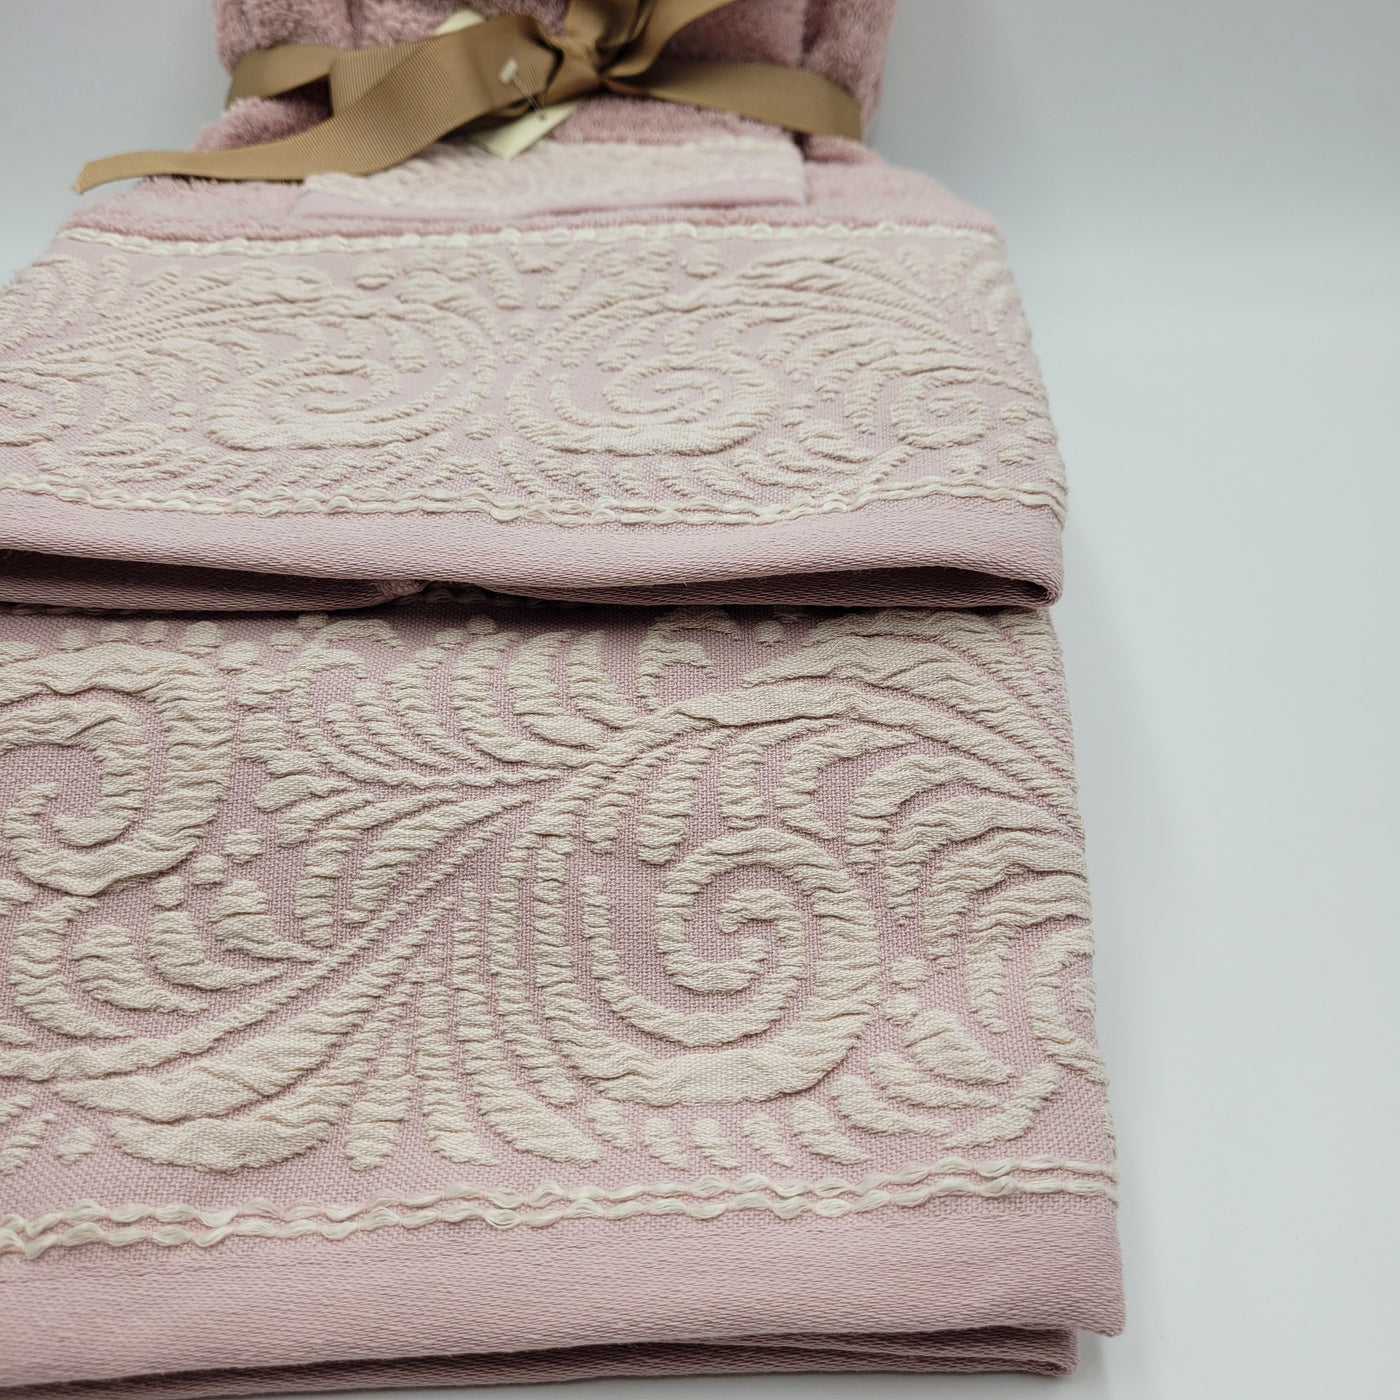 Textil Toallas Fibras naturales Rosa